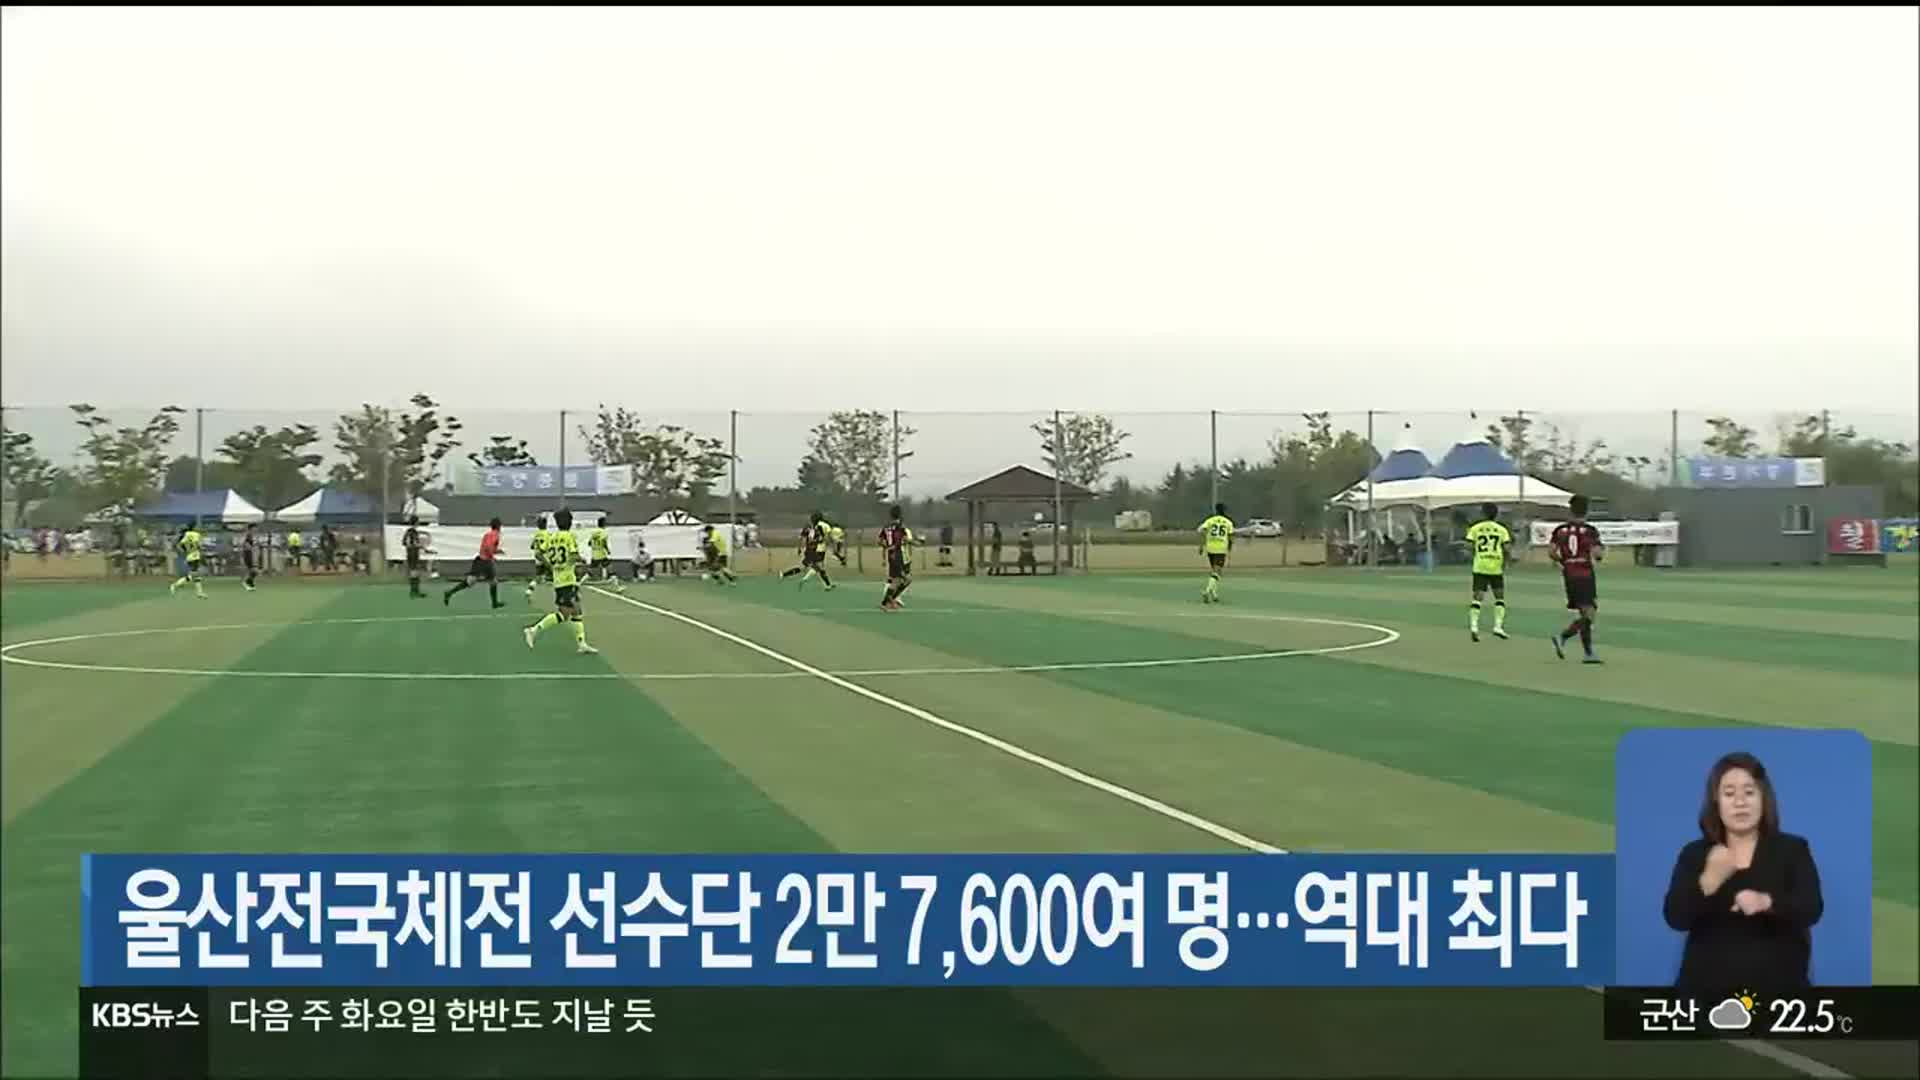 울산전국체전 선수단 2만 7,600여 명…역대 최다